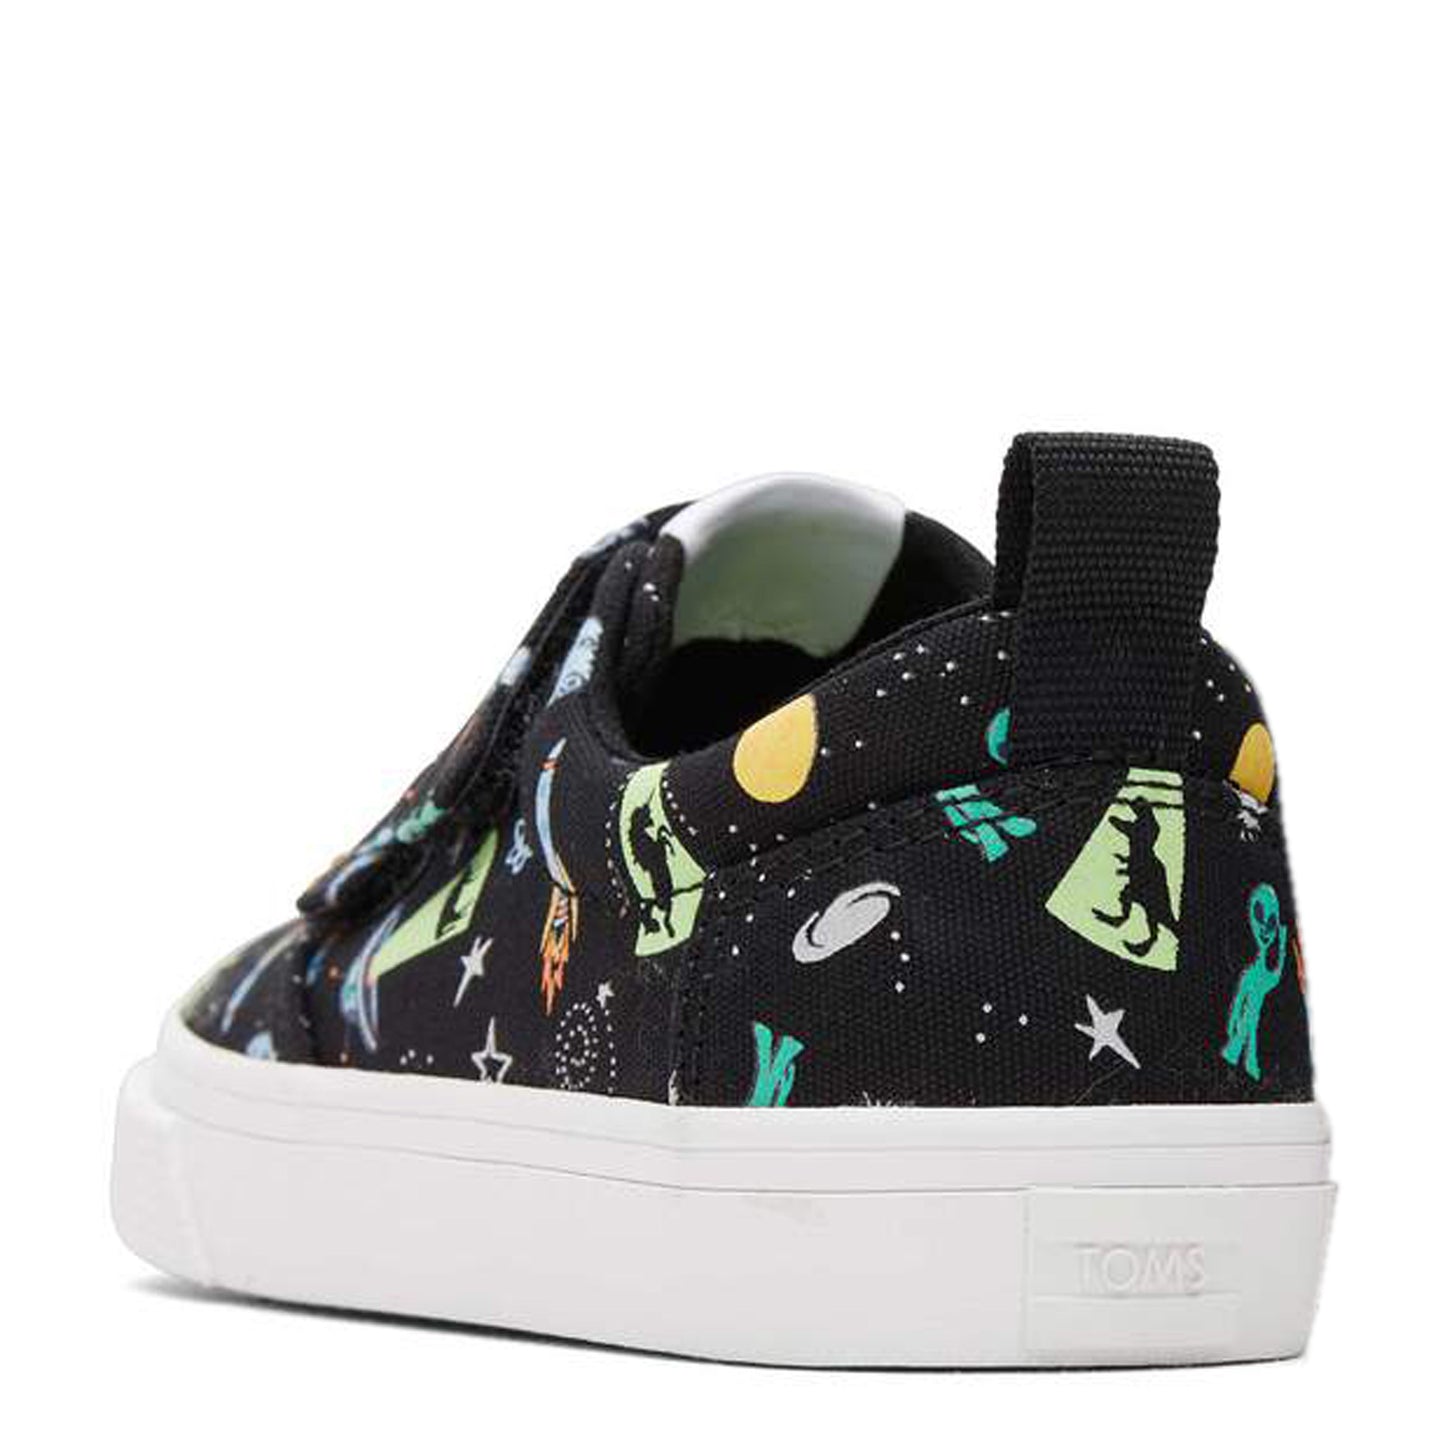 Peltz Shoes  Boy’s Toms Fenix Sneaker - Toddler Black Multi Aliens in Space 10020612